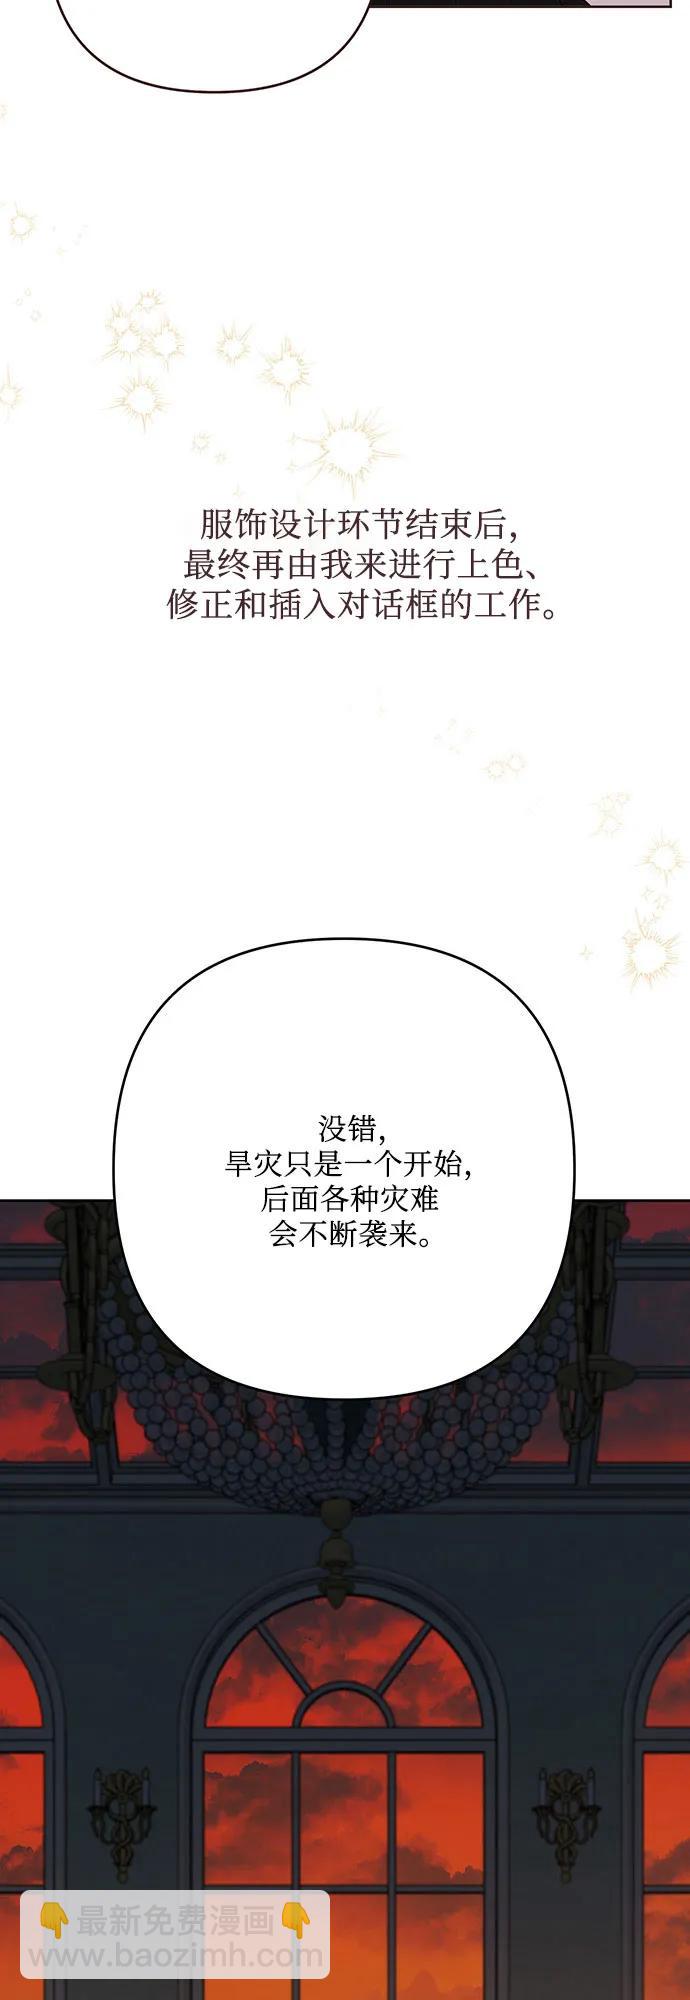 寶貝暴君 - 【免費】第一季後記 - 2